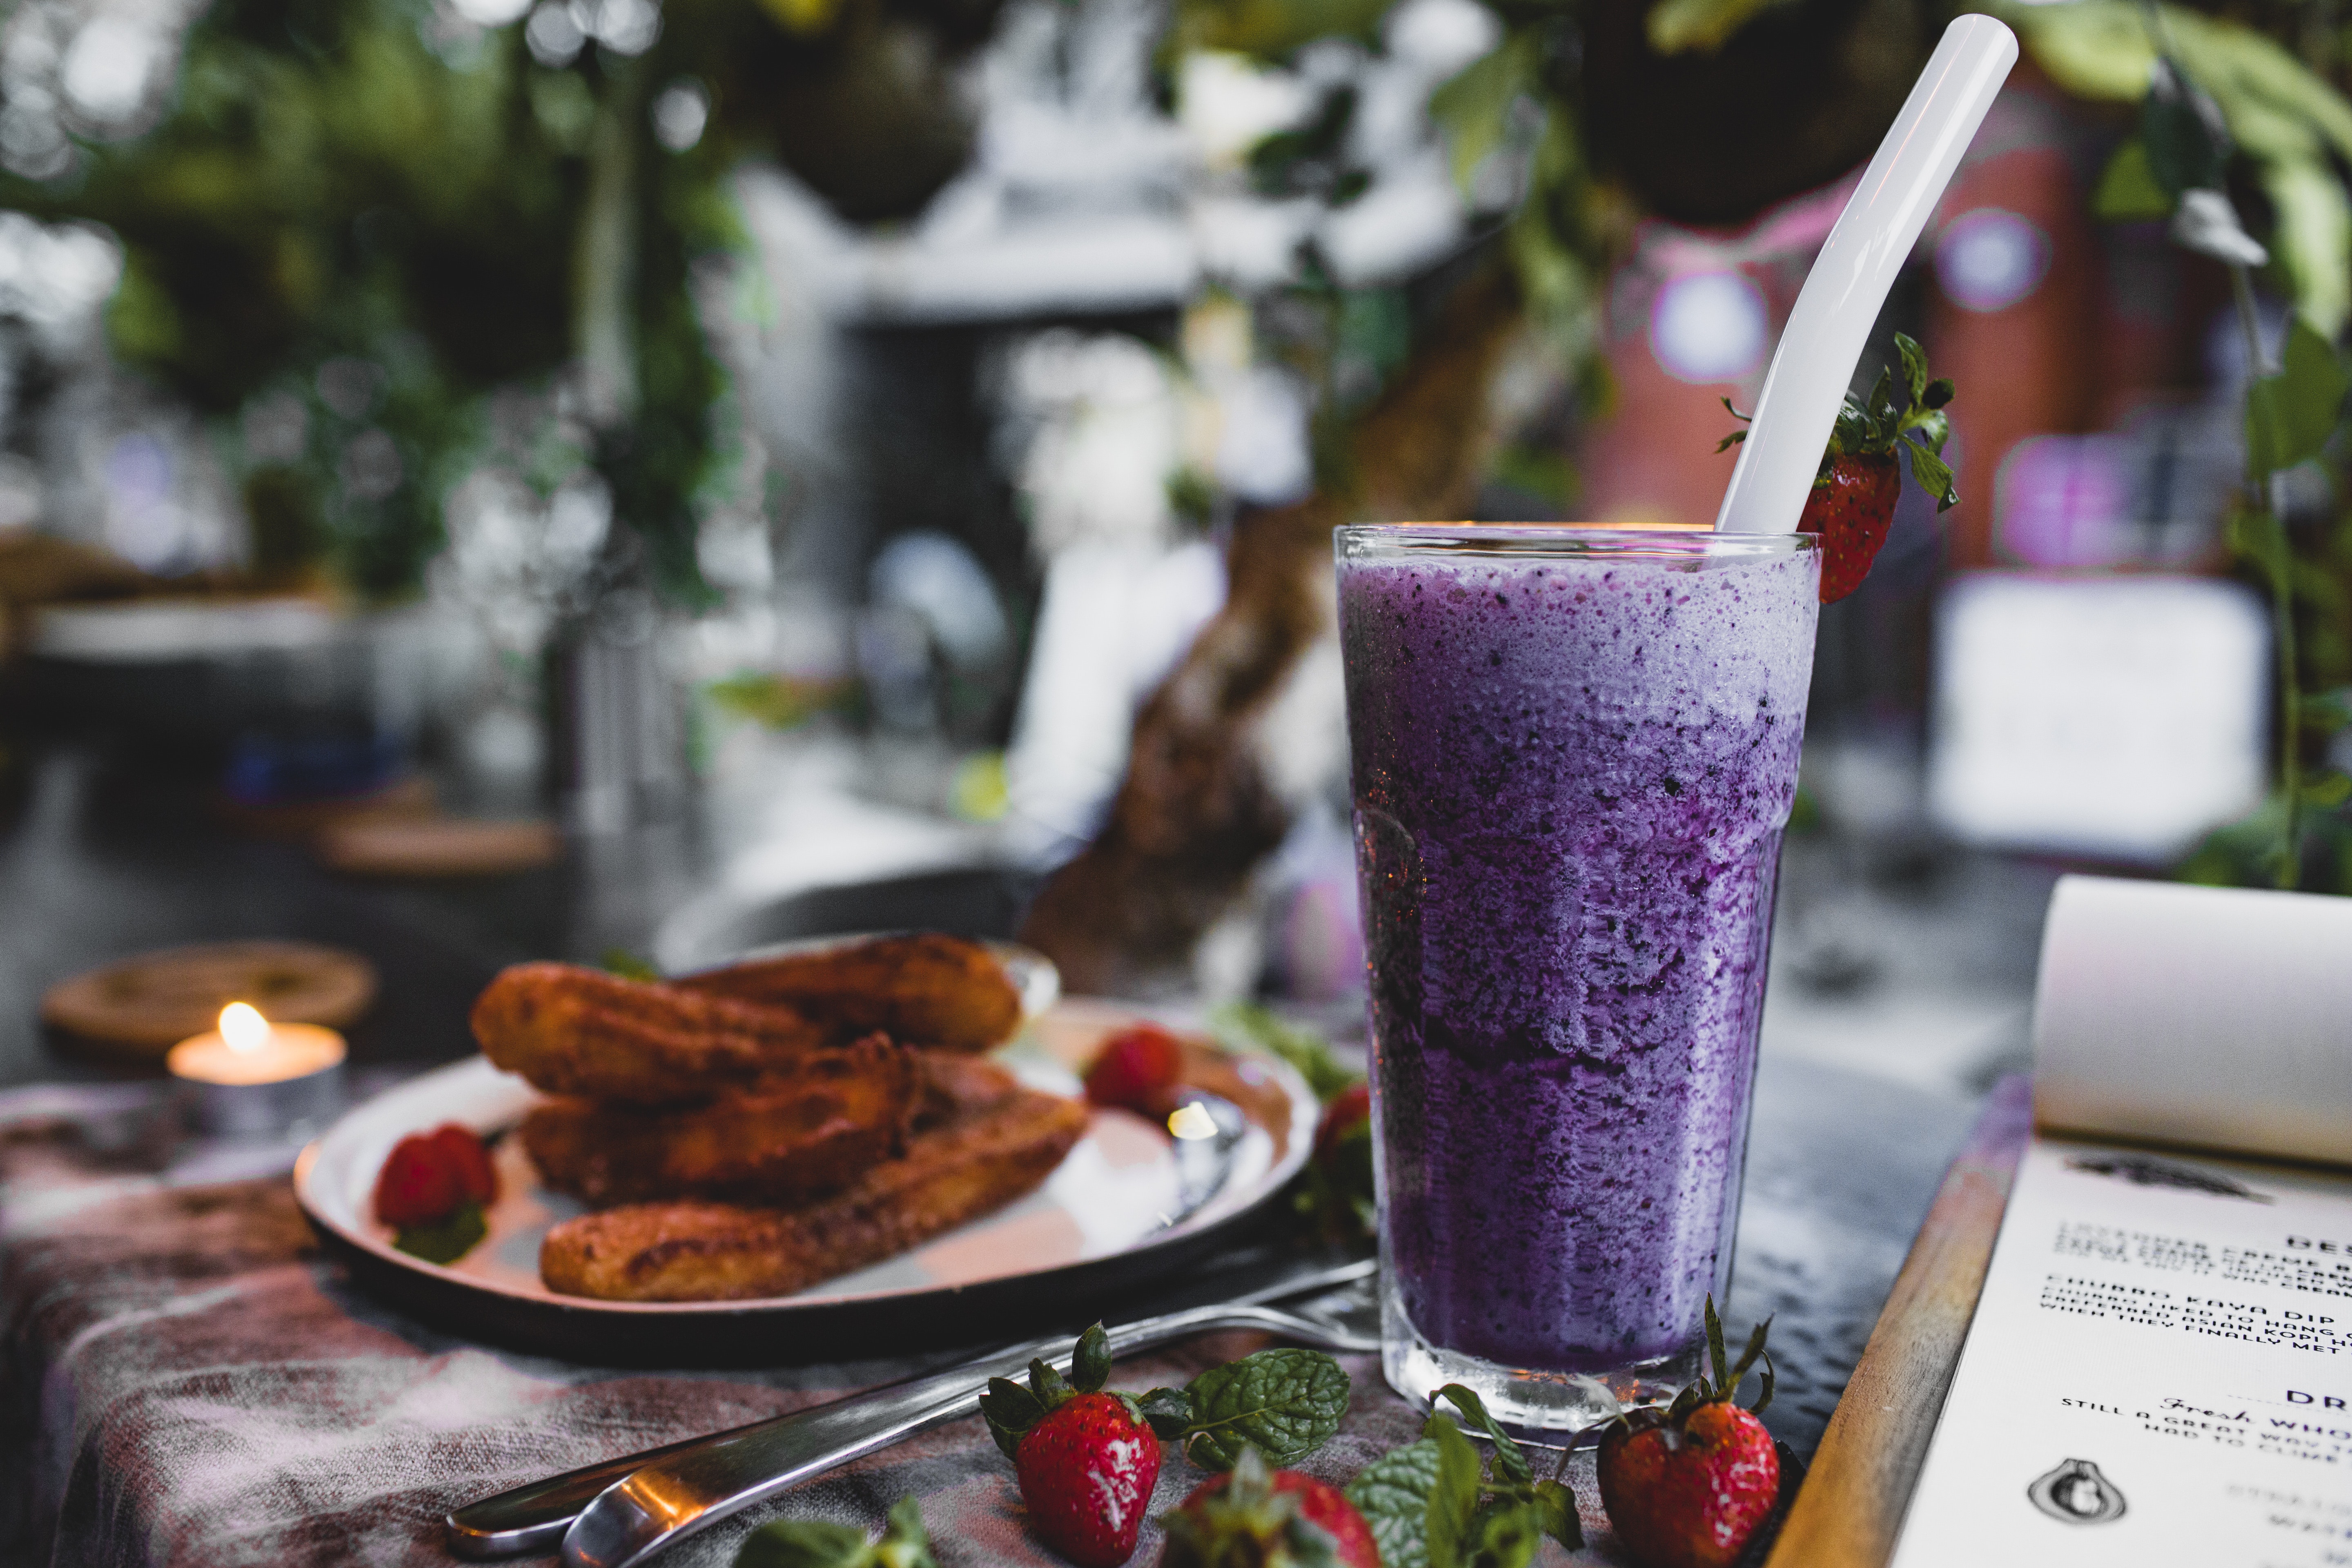 Tο αντιφλεγμονώδες Smoothie Berry Matcha είναι το καλύτερο υγιεινό πρωινό για πολυάσχολα πρωινά